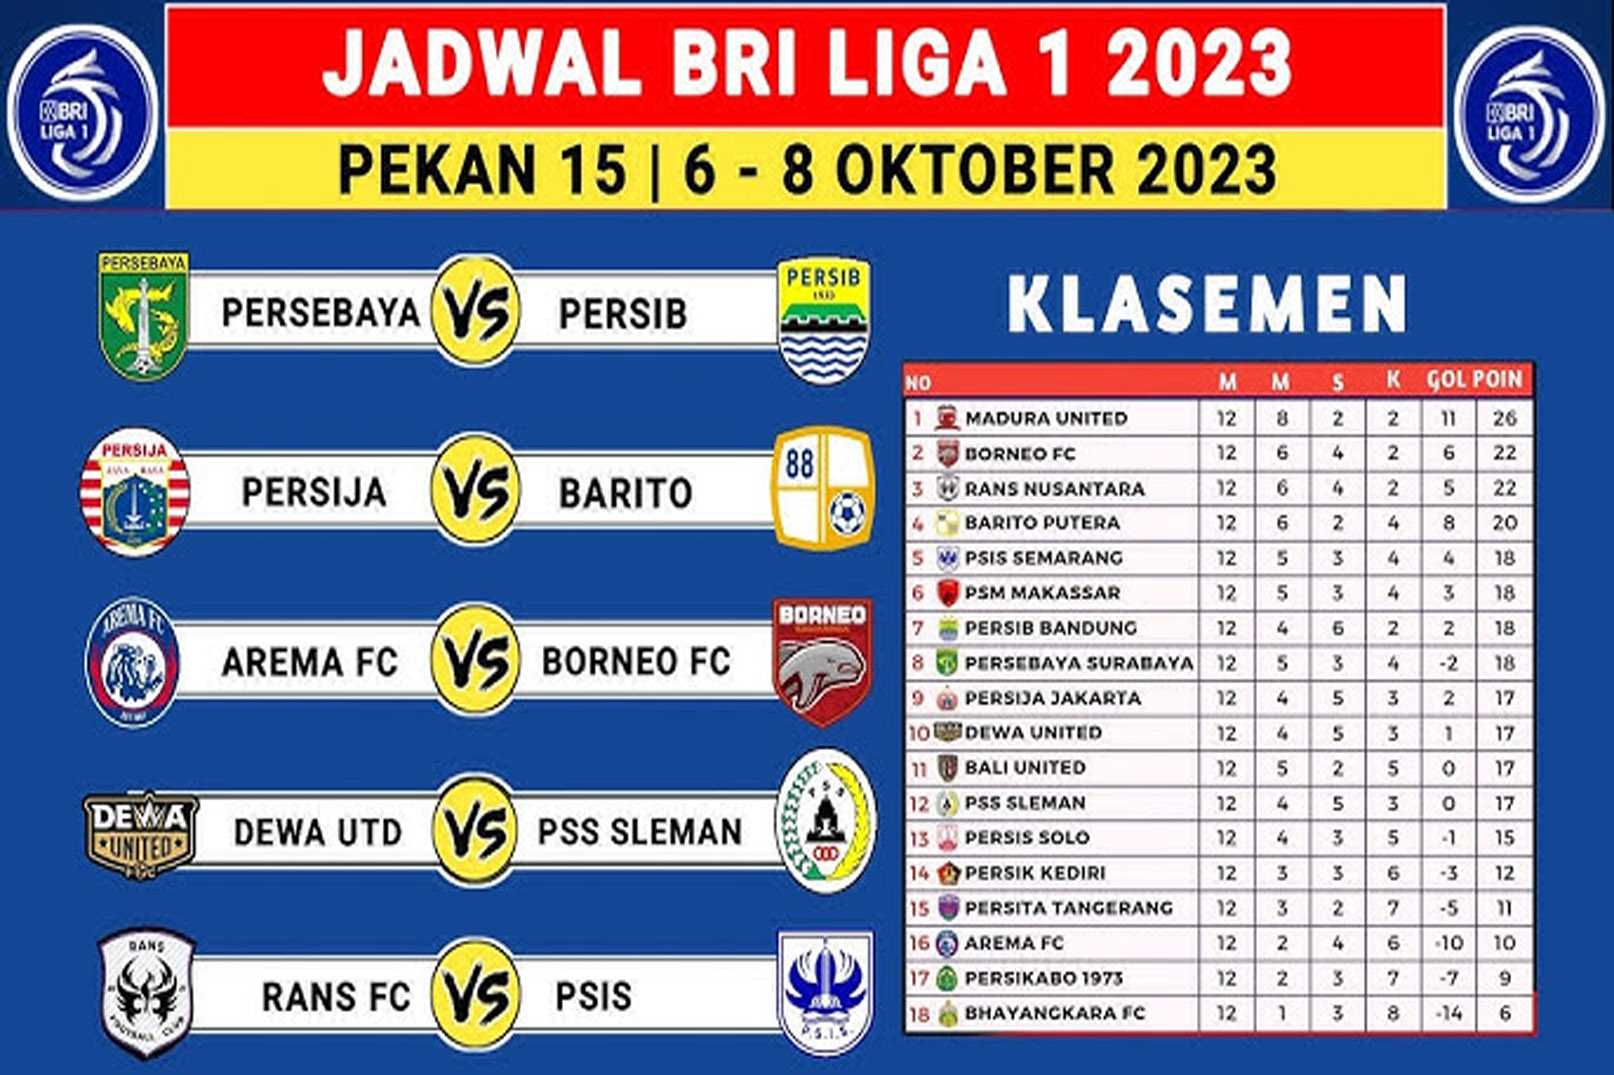 Jadwal Lengkap BRI Liga 1 2023-2024 Pekan 15 Live di Indosiar Serta Link Streaming Vidio